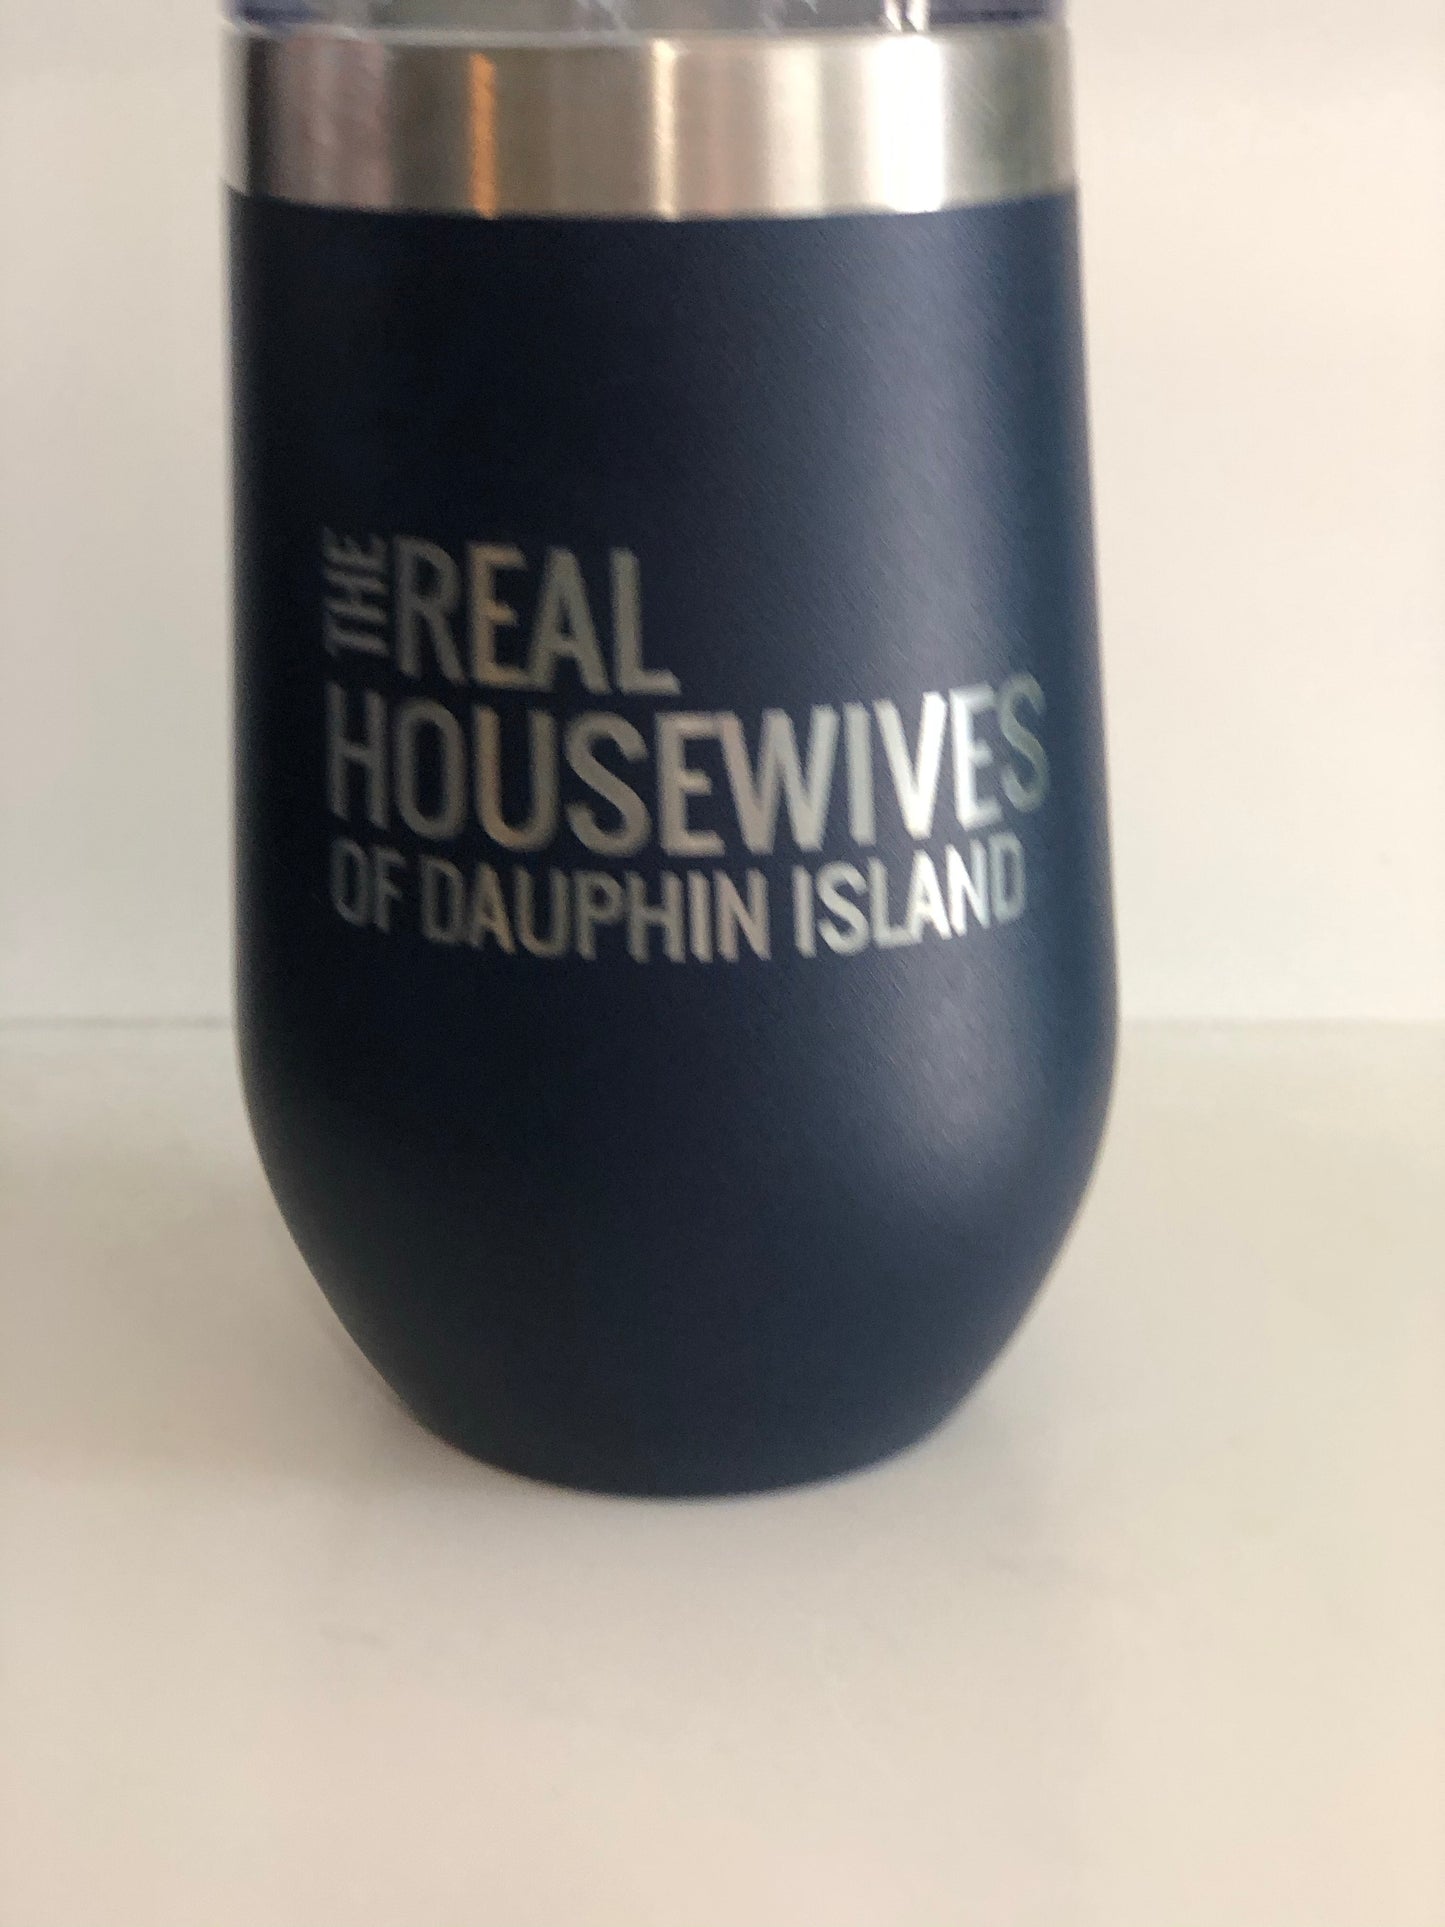 DAUPHIN ISLAND HOUSEWIVES TUMBLERS